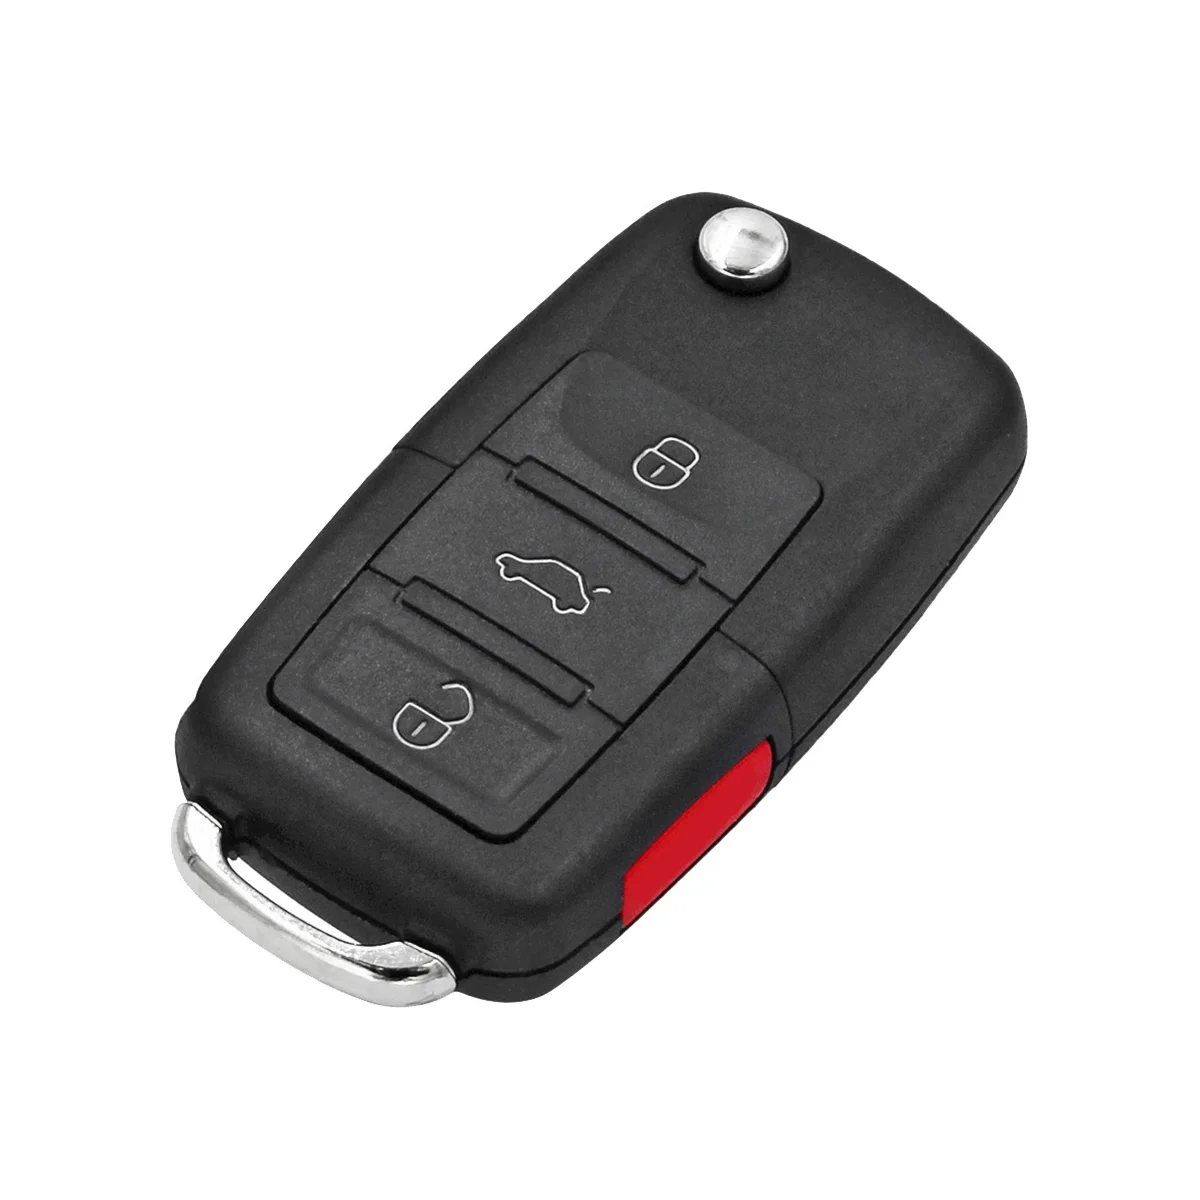 

KEYDIY B01-3 + 1 KD пульт дистанционного управления автомобильный ключ универсальный 4 кнопки для VW стиль для KD900/Φ KD MINI/ URG200 программатор